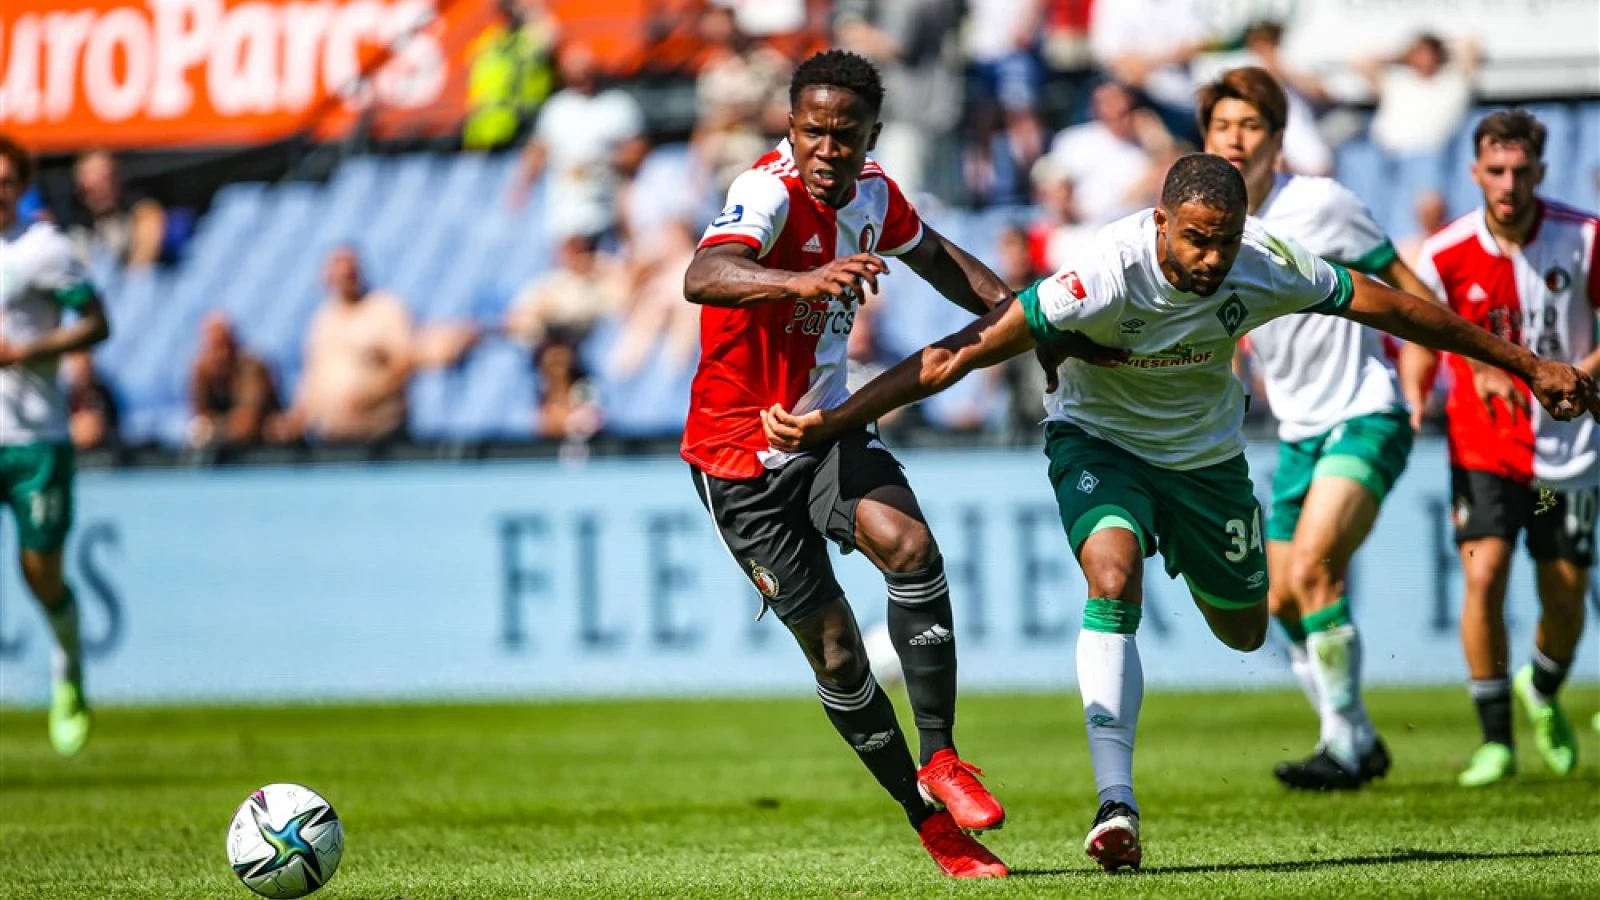 LIVE | Feyenoord - Werder Bremen 2-1 | Einde wedstrijd